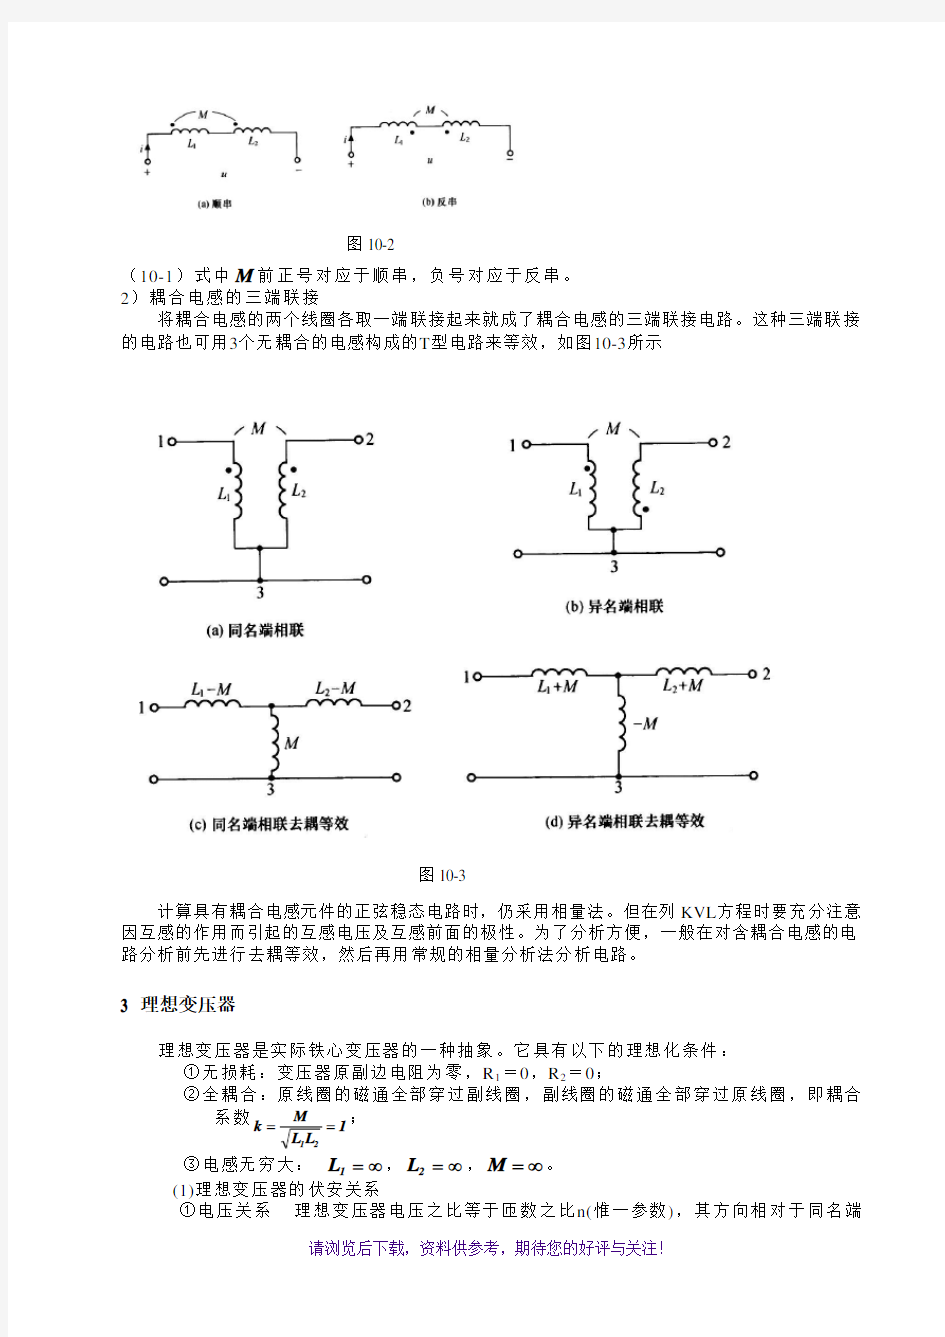 天津理工电路习题及答案第十章含耦合电感电路